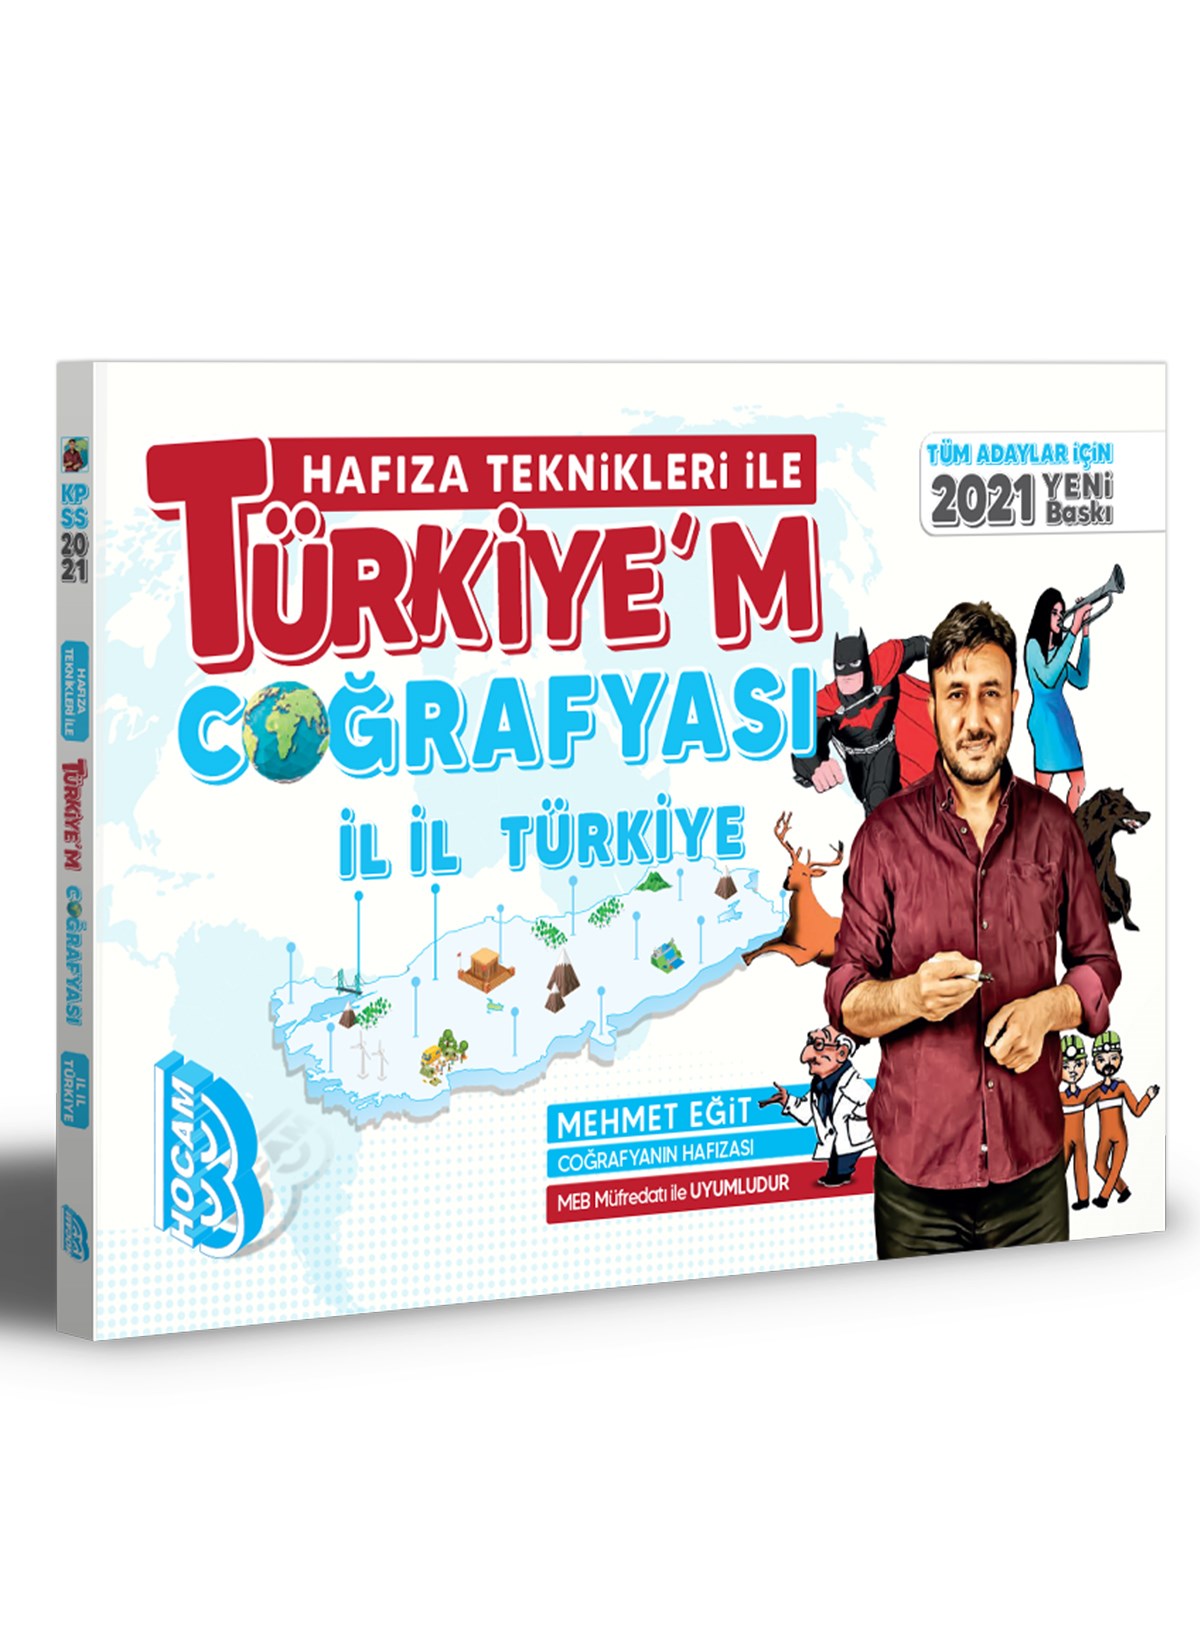 2021 Tüm Adaylar İçin Hafıza Teknikleri İle Türkiye'm Coğrafyası Benim Hocam Yayınları